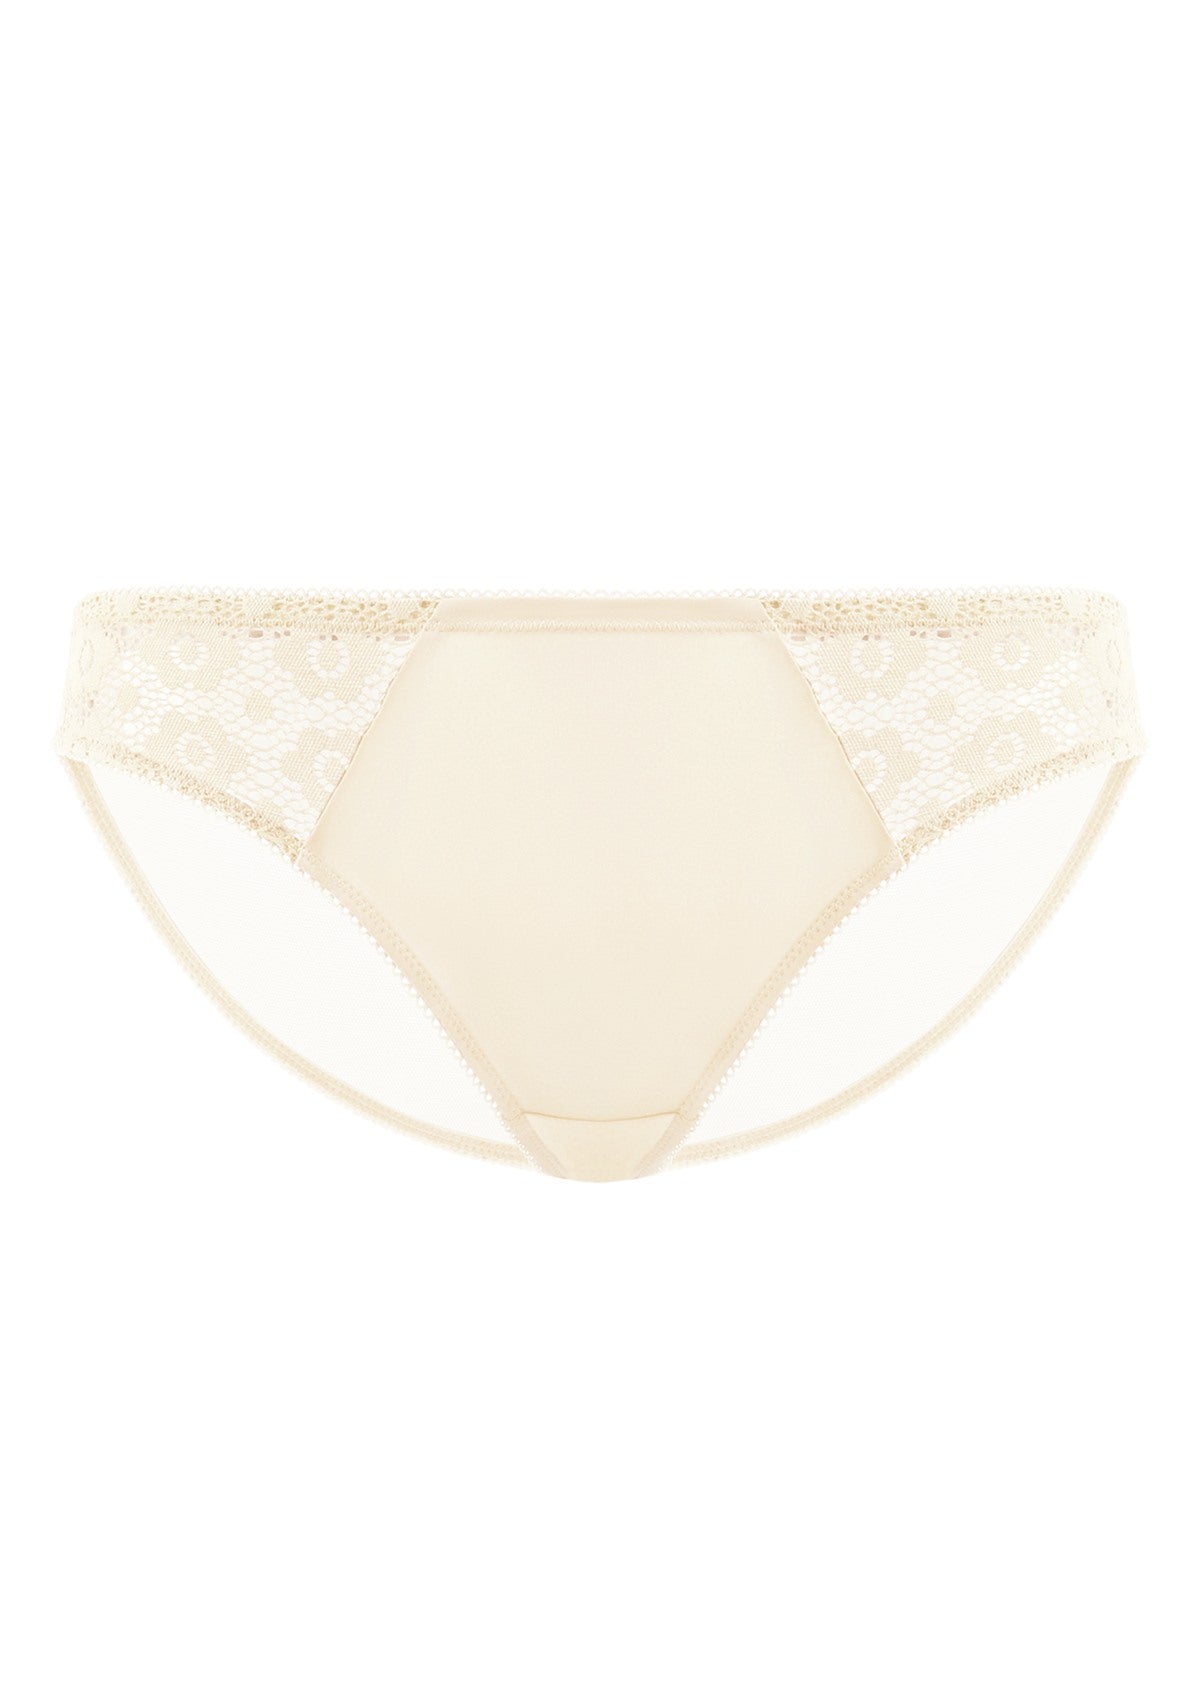 HSIA Serena Comfort Lace Trim Bikini Underwear - L / Champagne